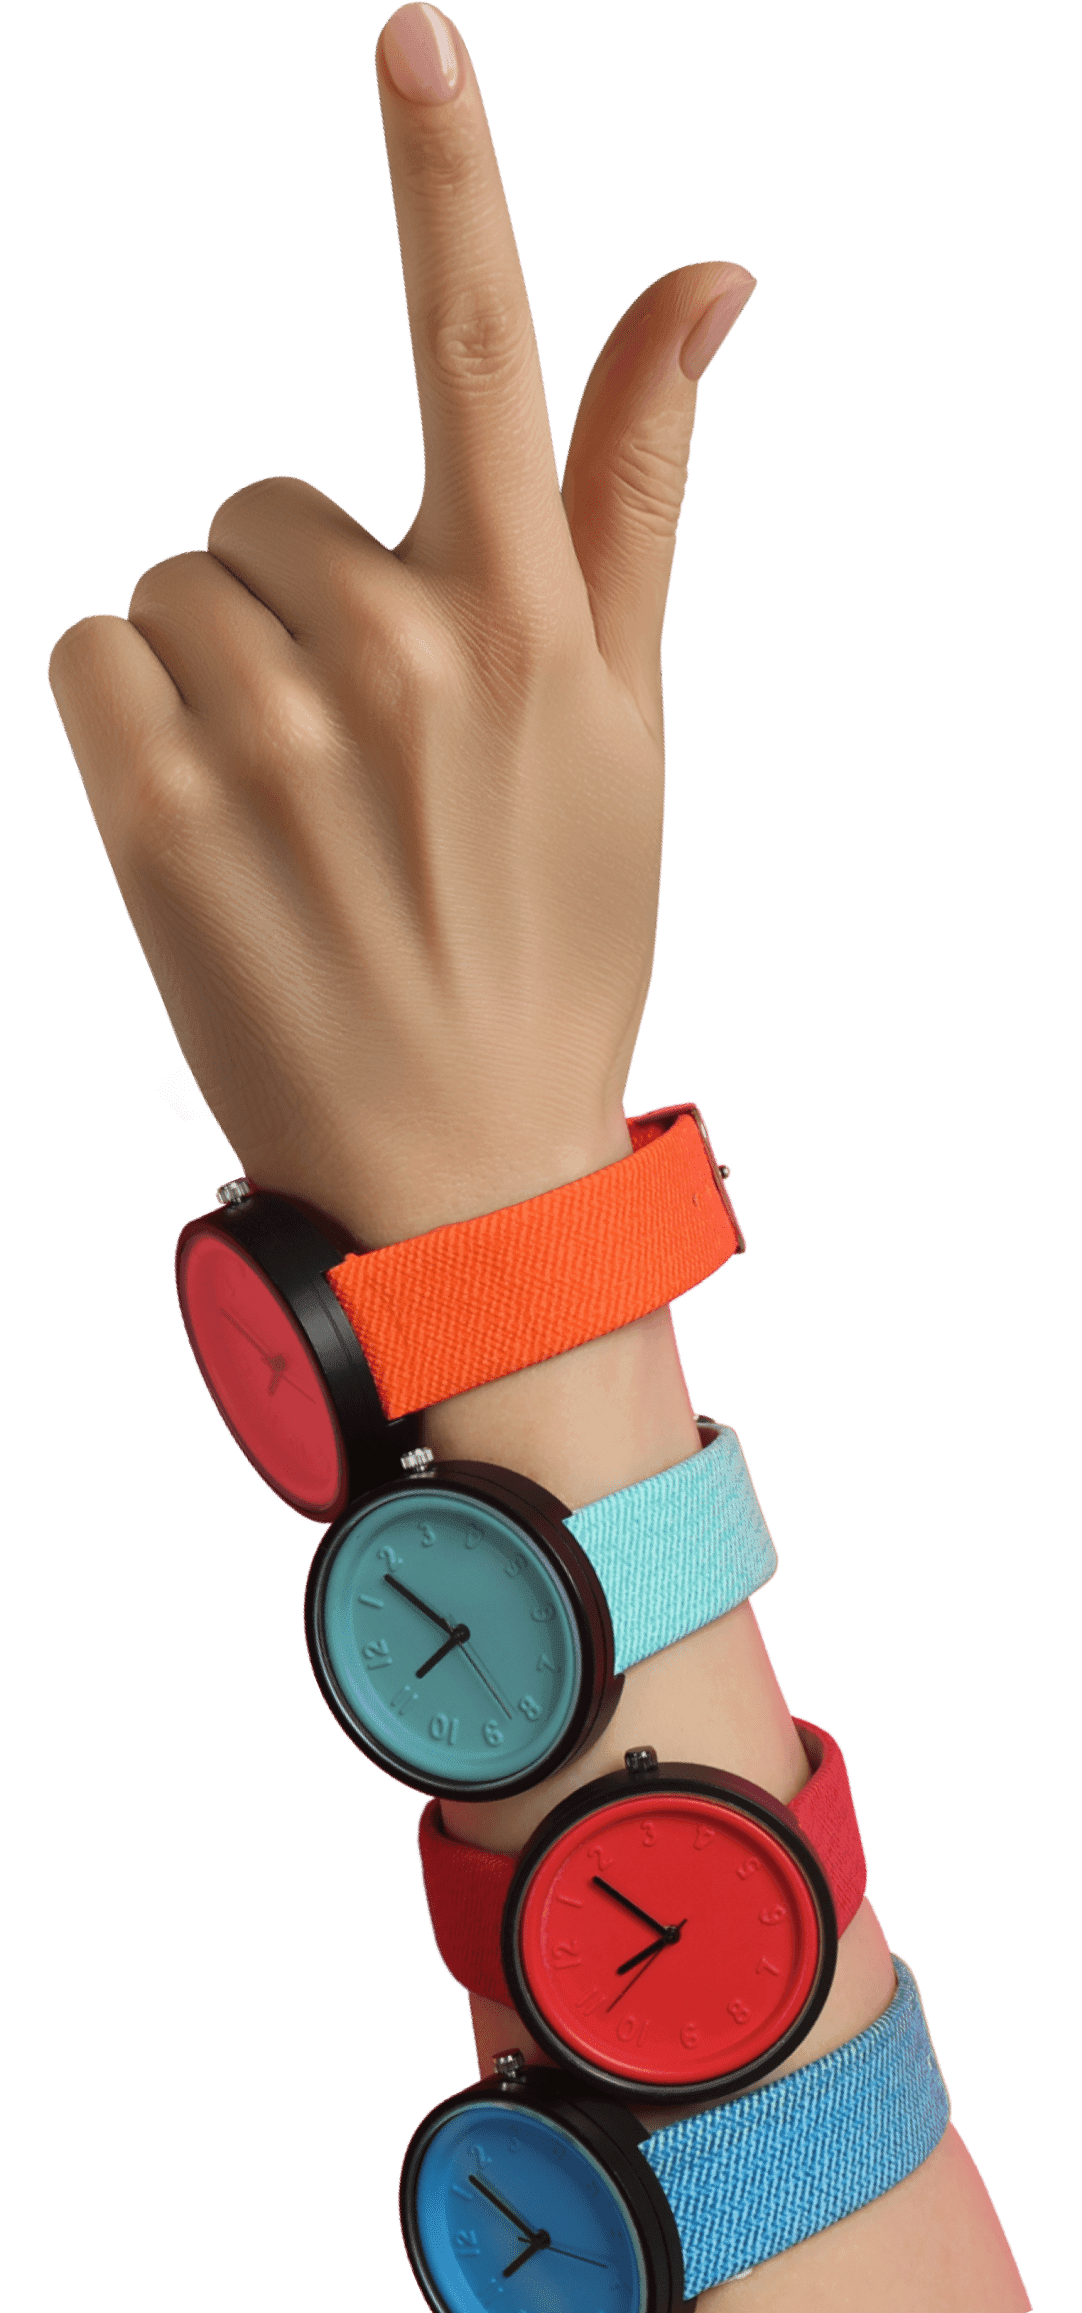 一隻手，食指指向上並戴有三隻分別為橙色、青色和紅色的腕錶。